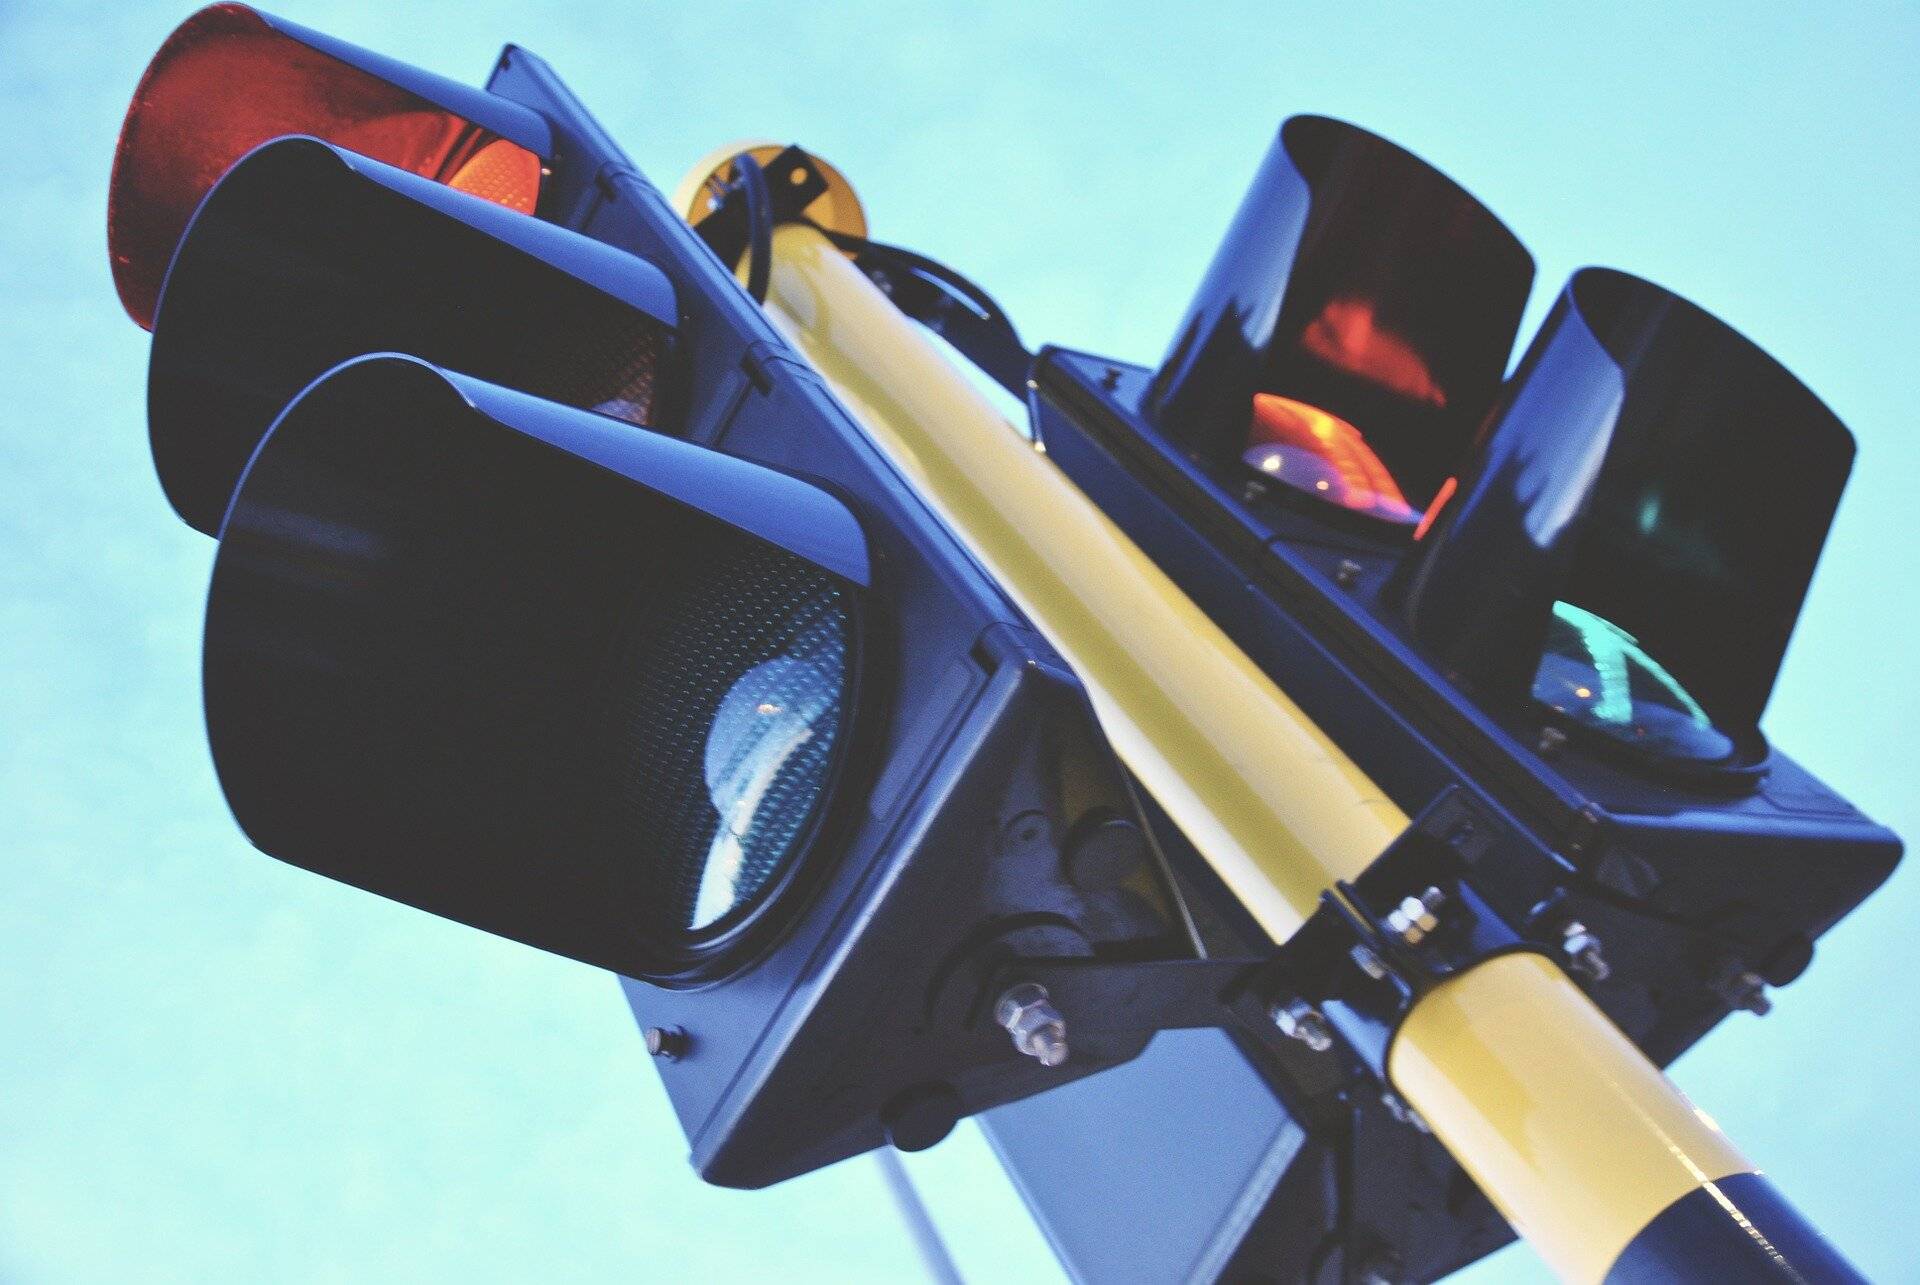 Gesamte Lichtsignalanlage muss von Straßen.NRW erneuert werden: Ausfall der Ampelanlage 